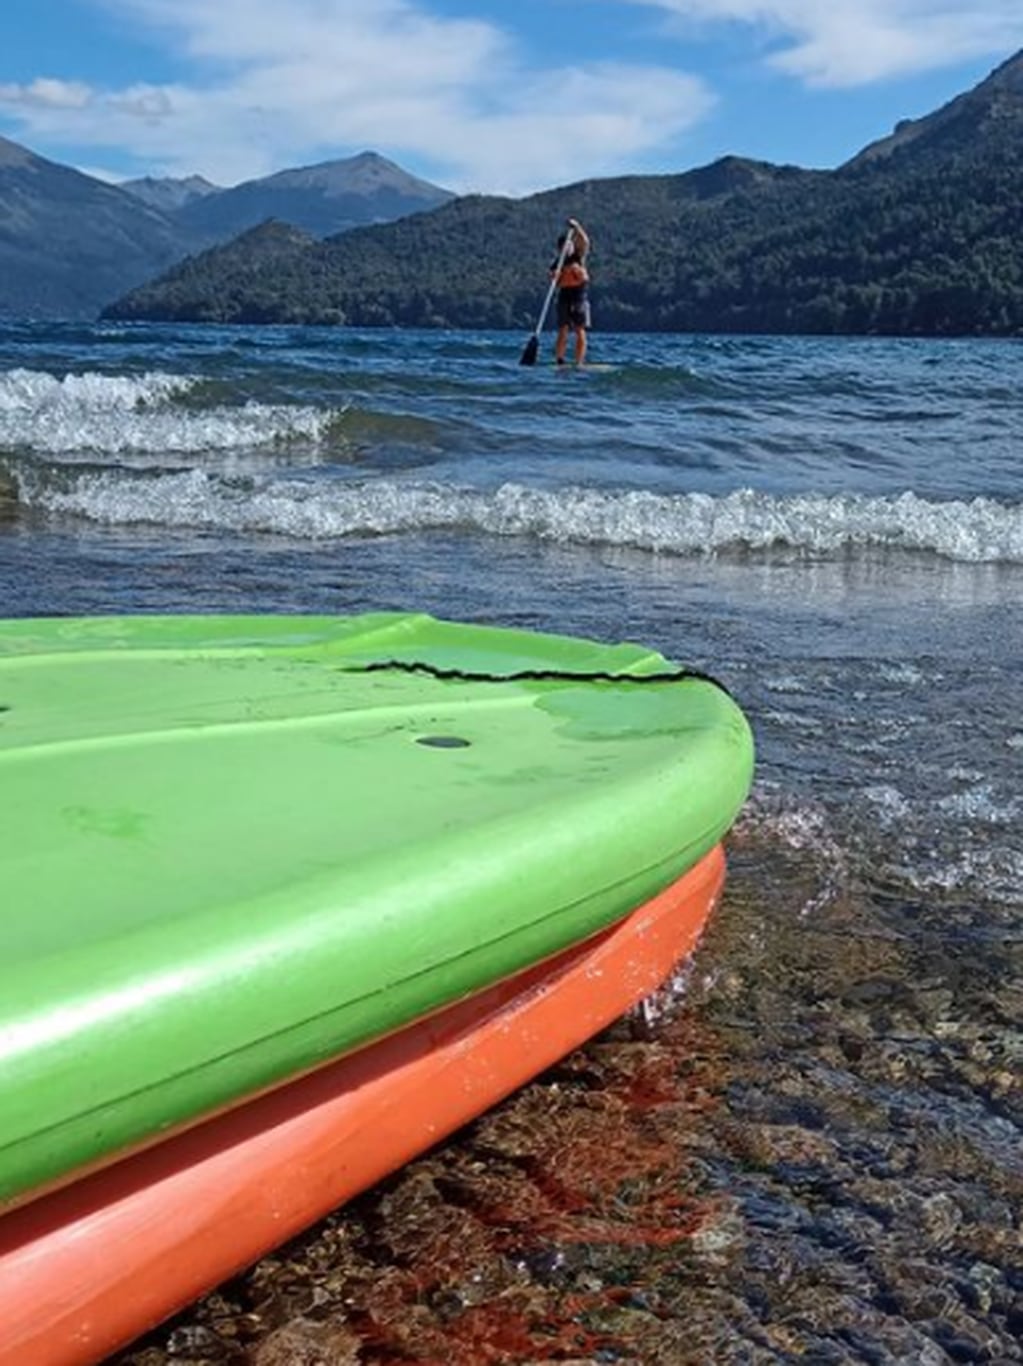 Modo vacaciones: 5 actividades imperdibles para disfrutar del verano de Bariloche en 3 días. Foto: Instagram @cuadrantesup